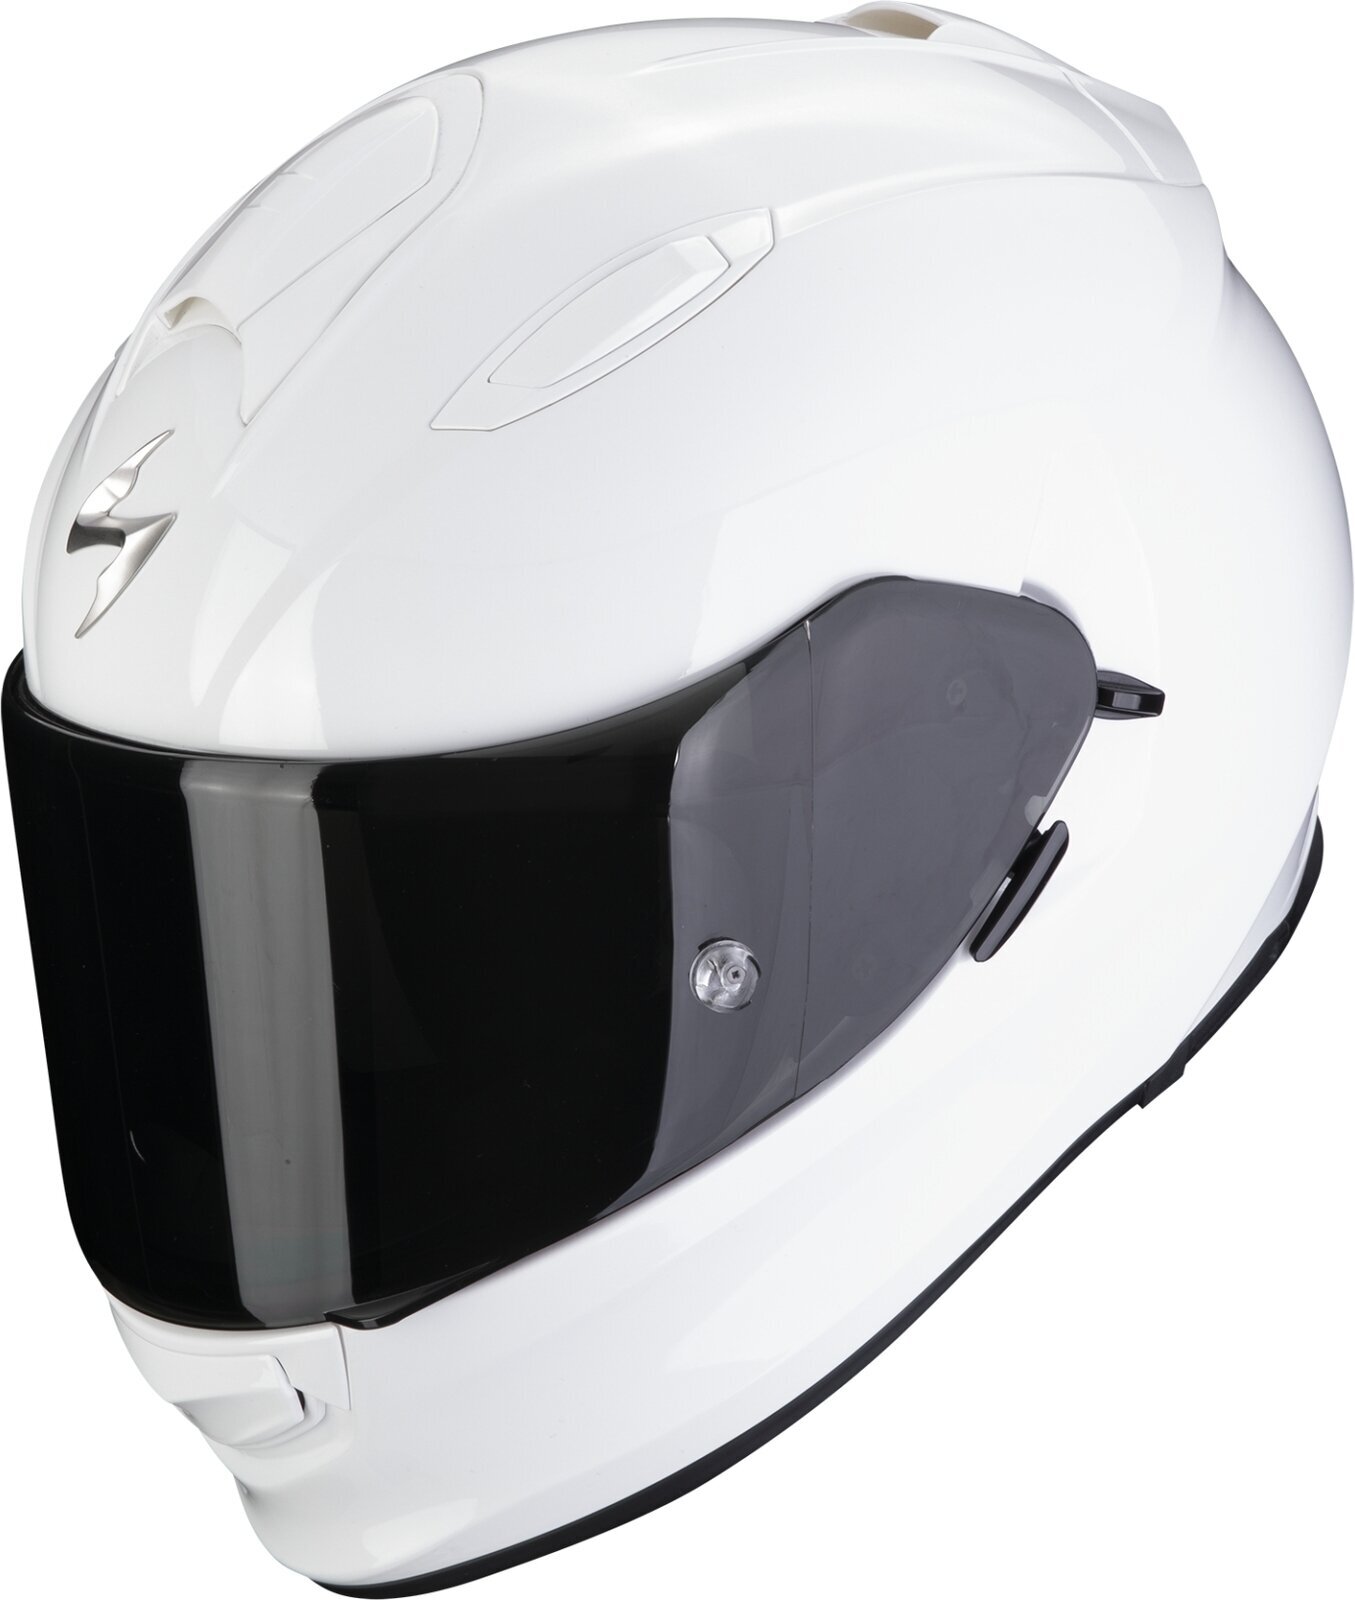 Helmet Scorpion EXO 491 SOLID White XS Helmet